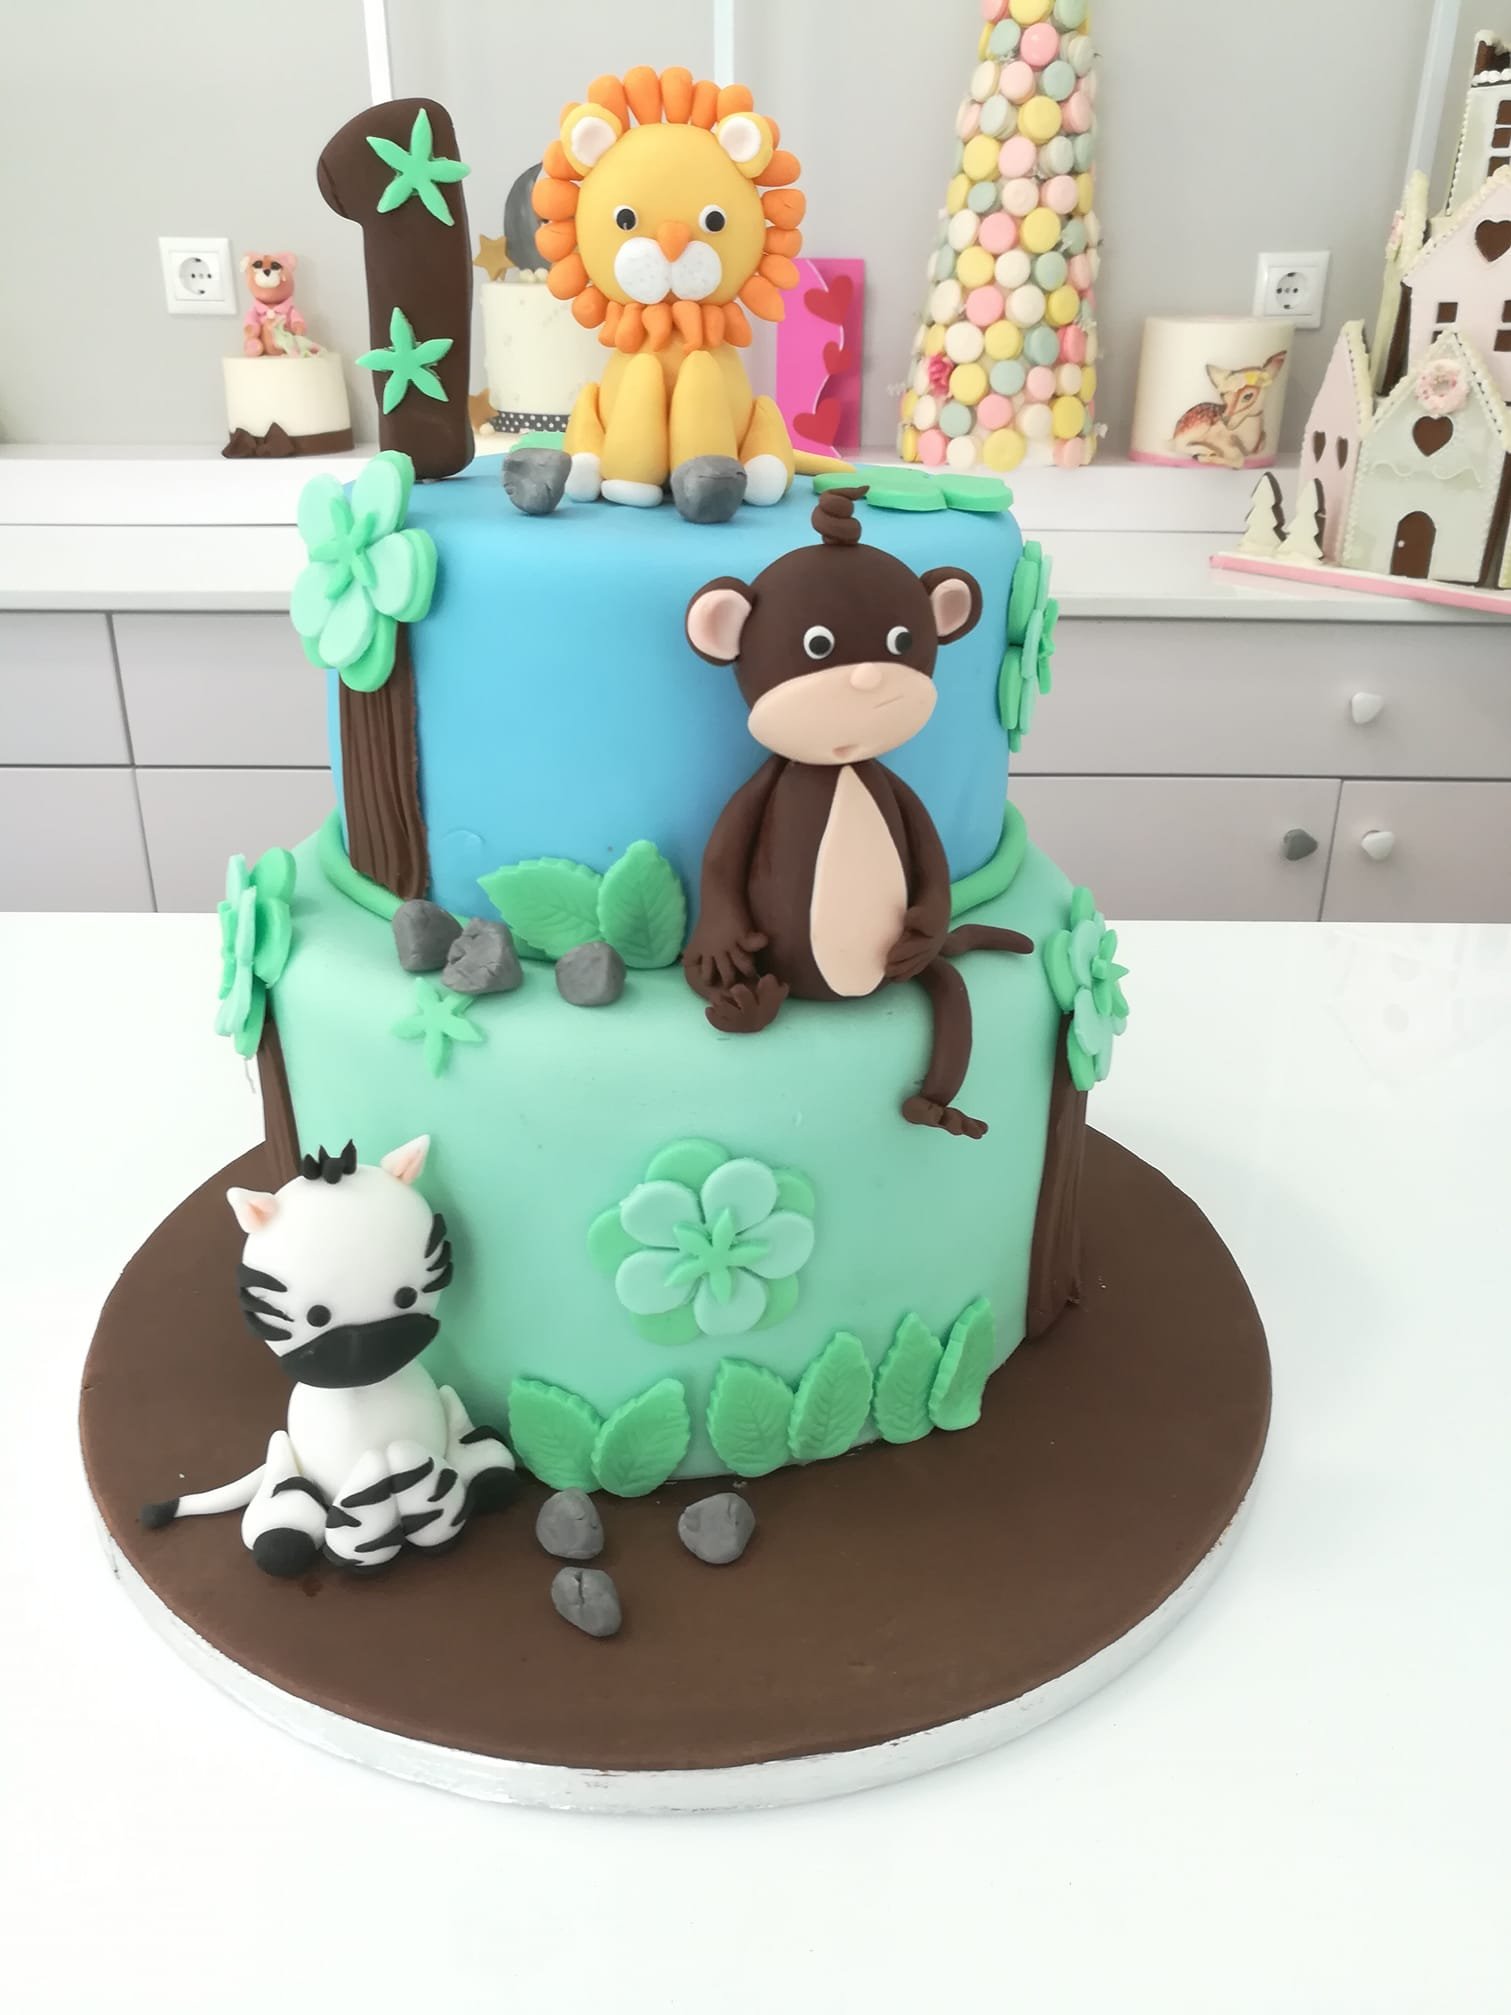 τούρτα από ζαχαρόπαστα ζώα της ζούγκλας Jungle cake themed cake, Ζαχαροπλαστεία Καλαμάτα madame charlotte, τούρτες για πάρτι παιδικές γενεθλίων για αγόρια για κορίτσια για μεγάλους, birthday themed cakes patisserie confectionery kalamata